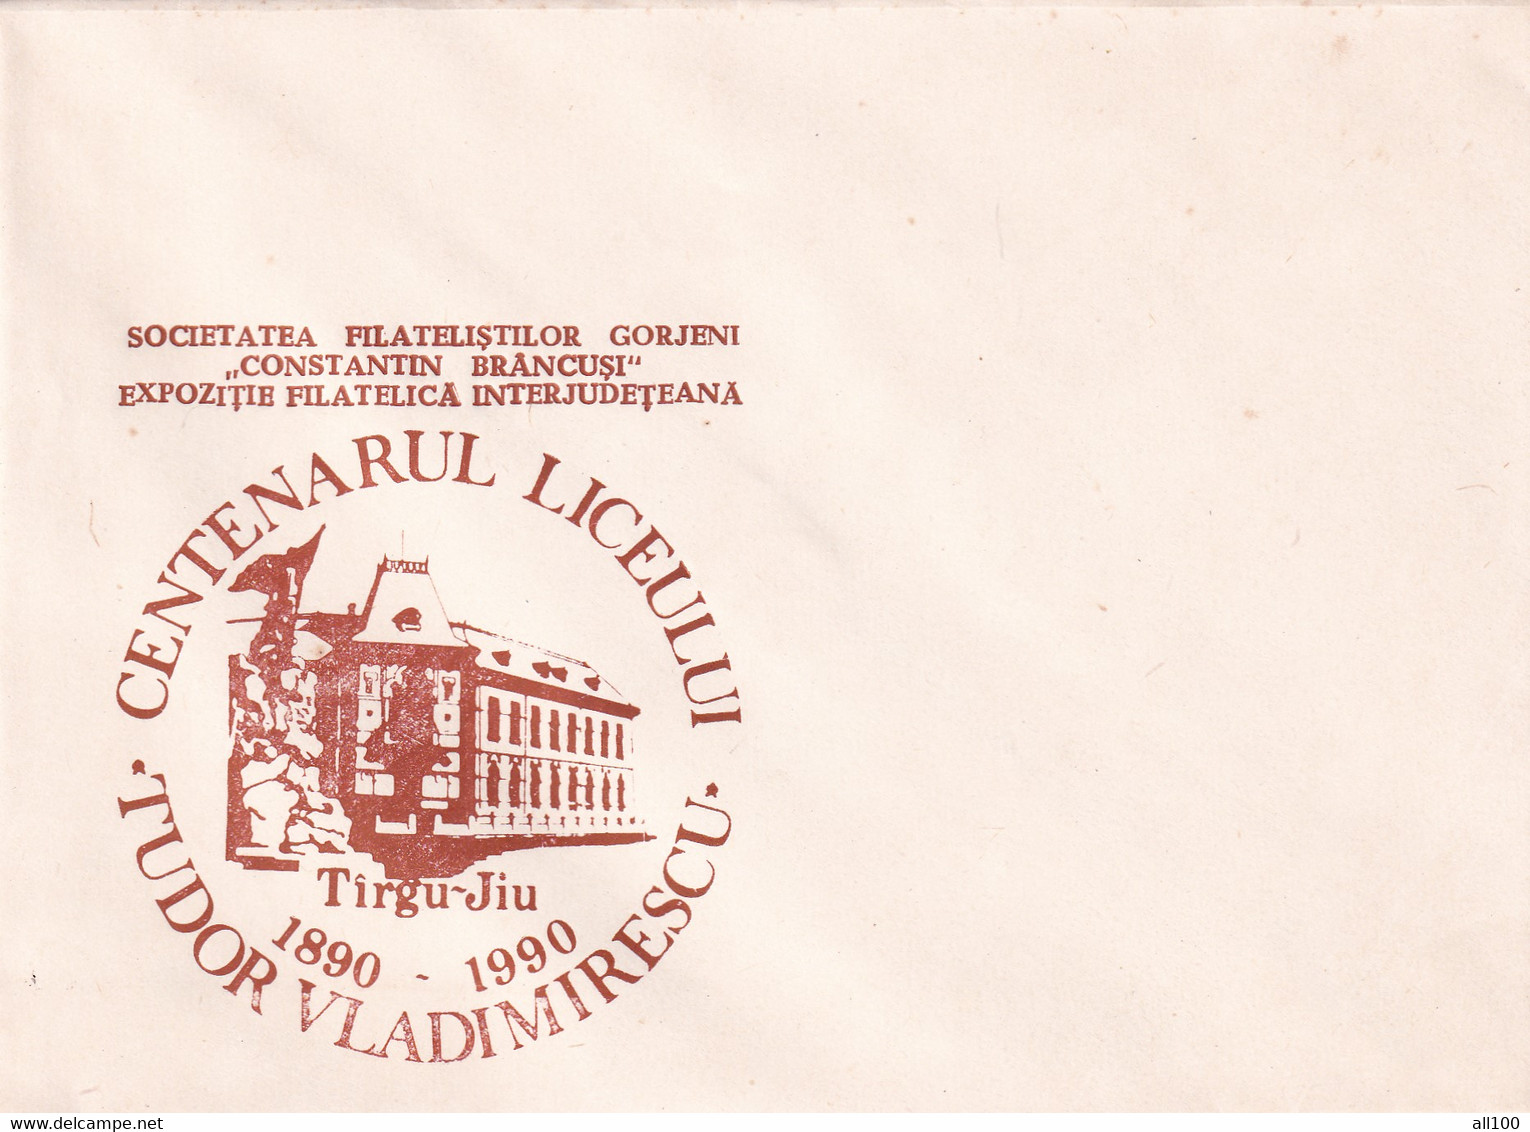 A19350 - CENTENARUL LICEULUI TUDOR VLADIMIRESCU TARGU JIU TIRGU-JIU COVER ENVELOPE UNUSED 1990 ROMANIA - Covers & Documents